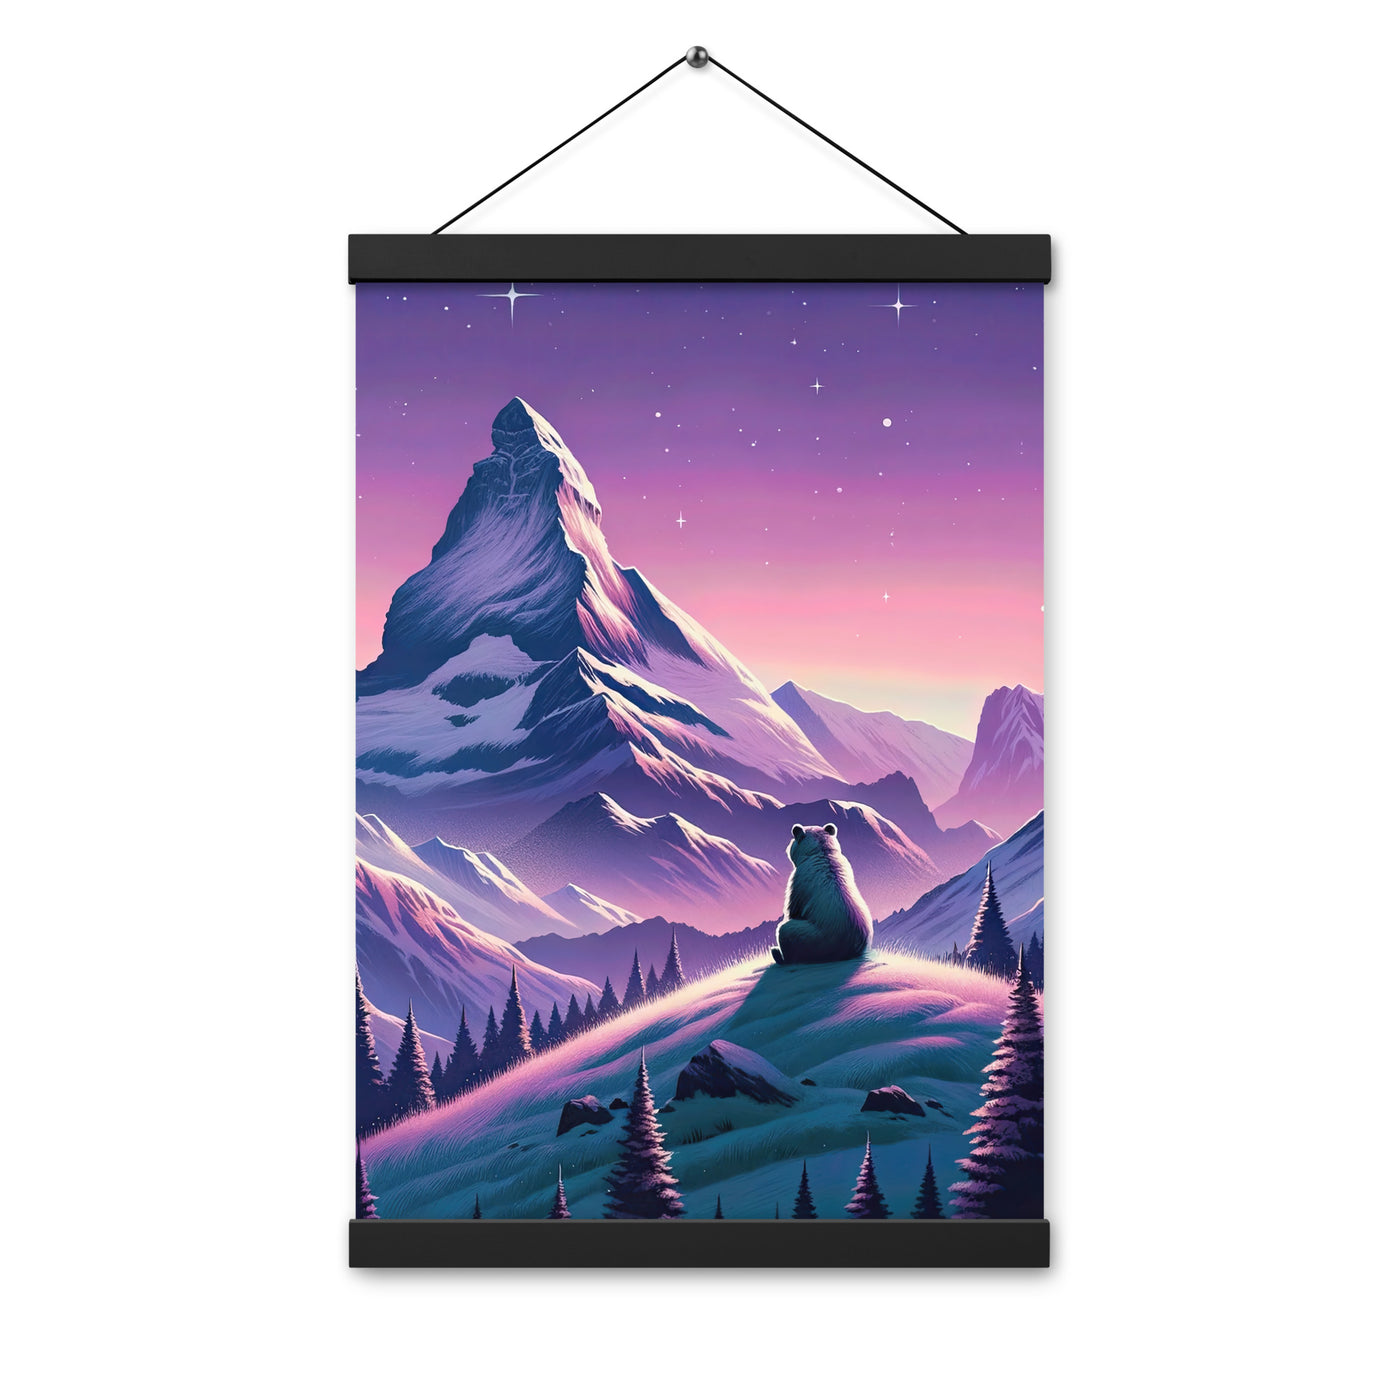 Bezaubernder Alpenabend mit Bär, lavendel-rosafarbener Himmel (AN) - Premium Poster mit Aufhängung xxx yyy zzz 30.5 x 45.7 cm